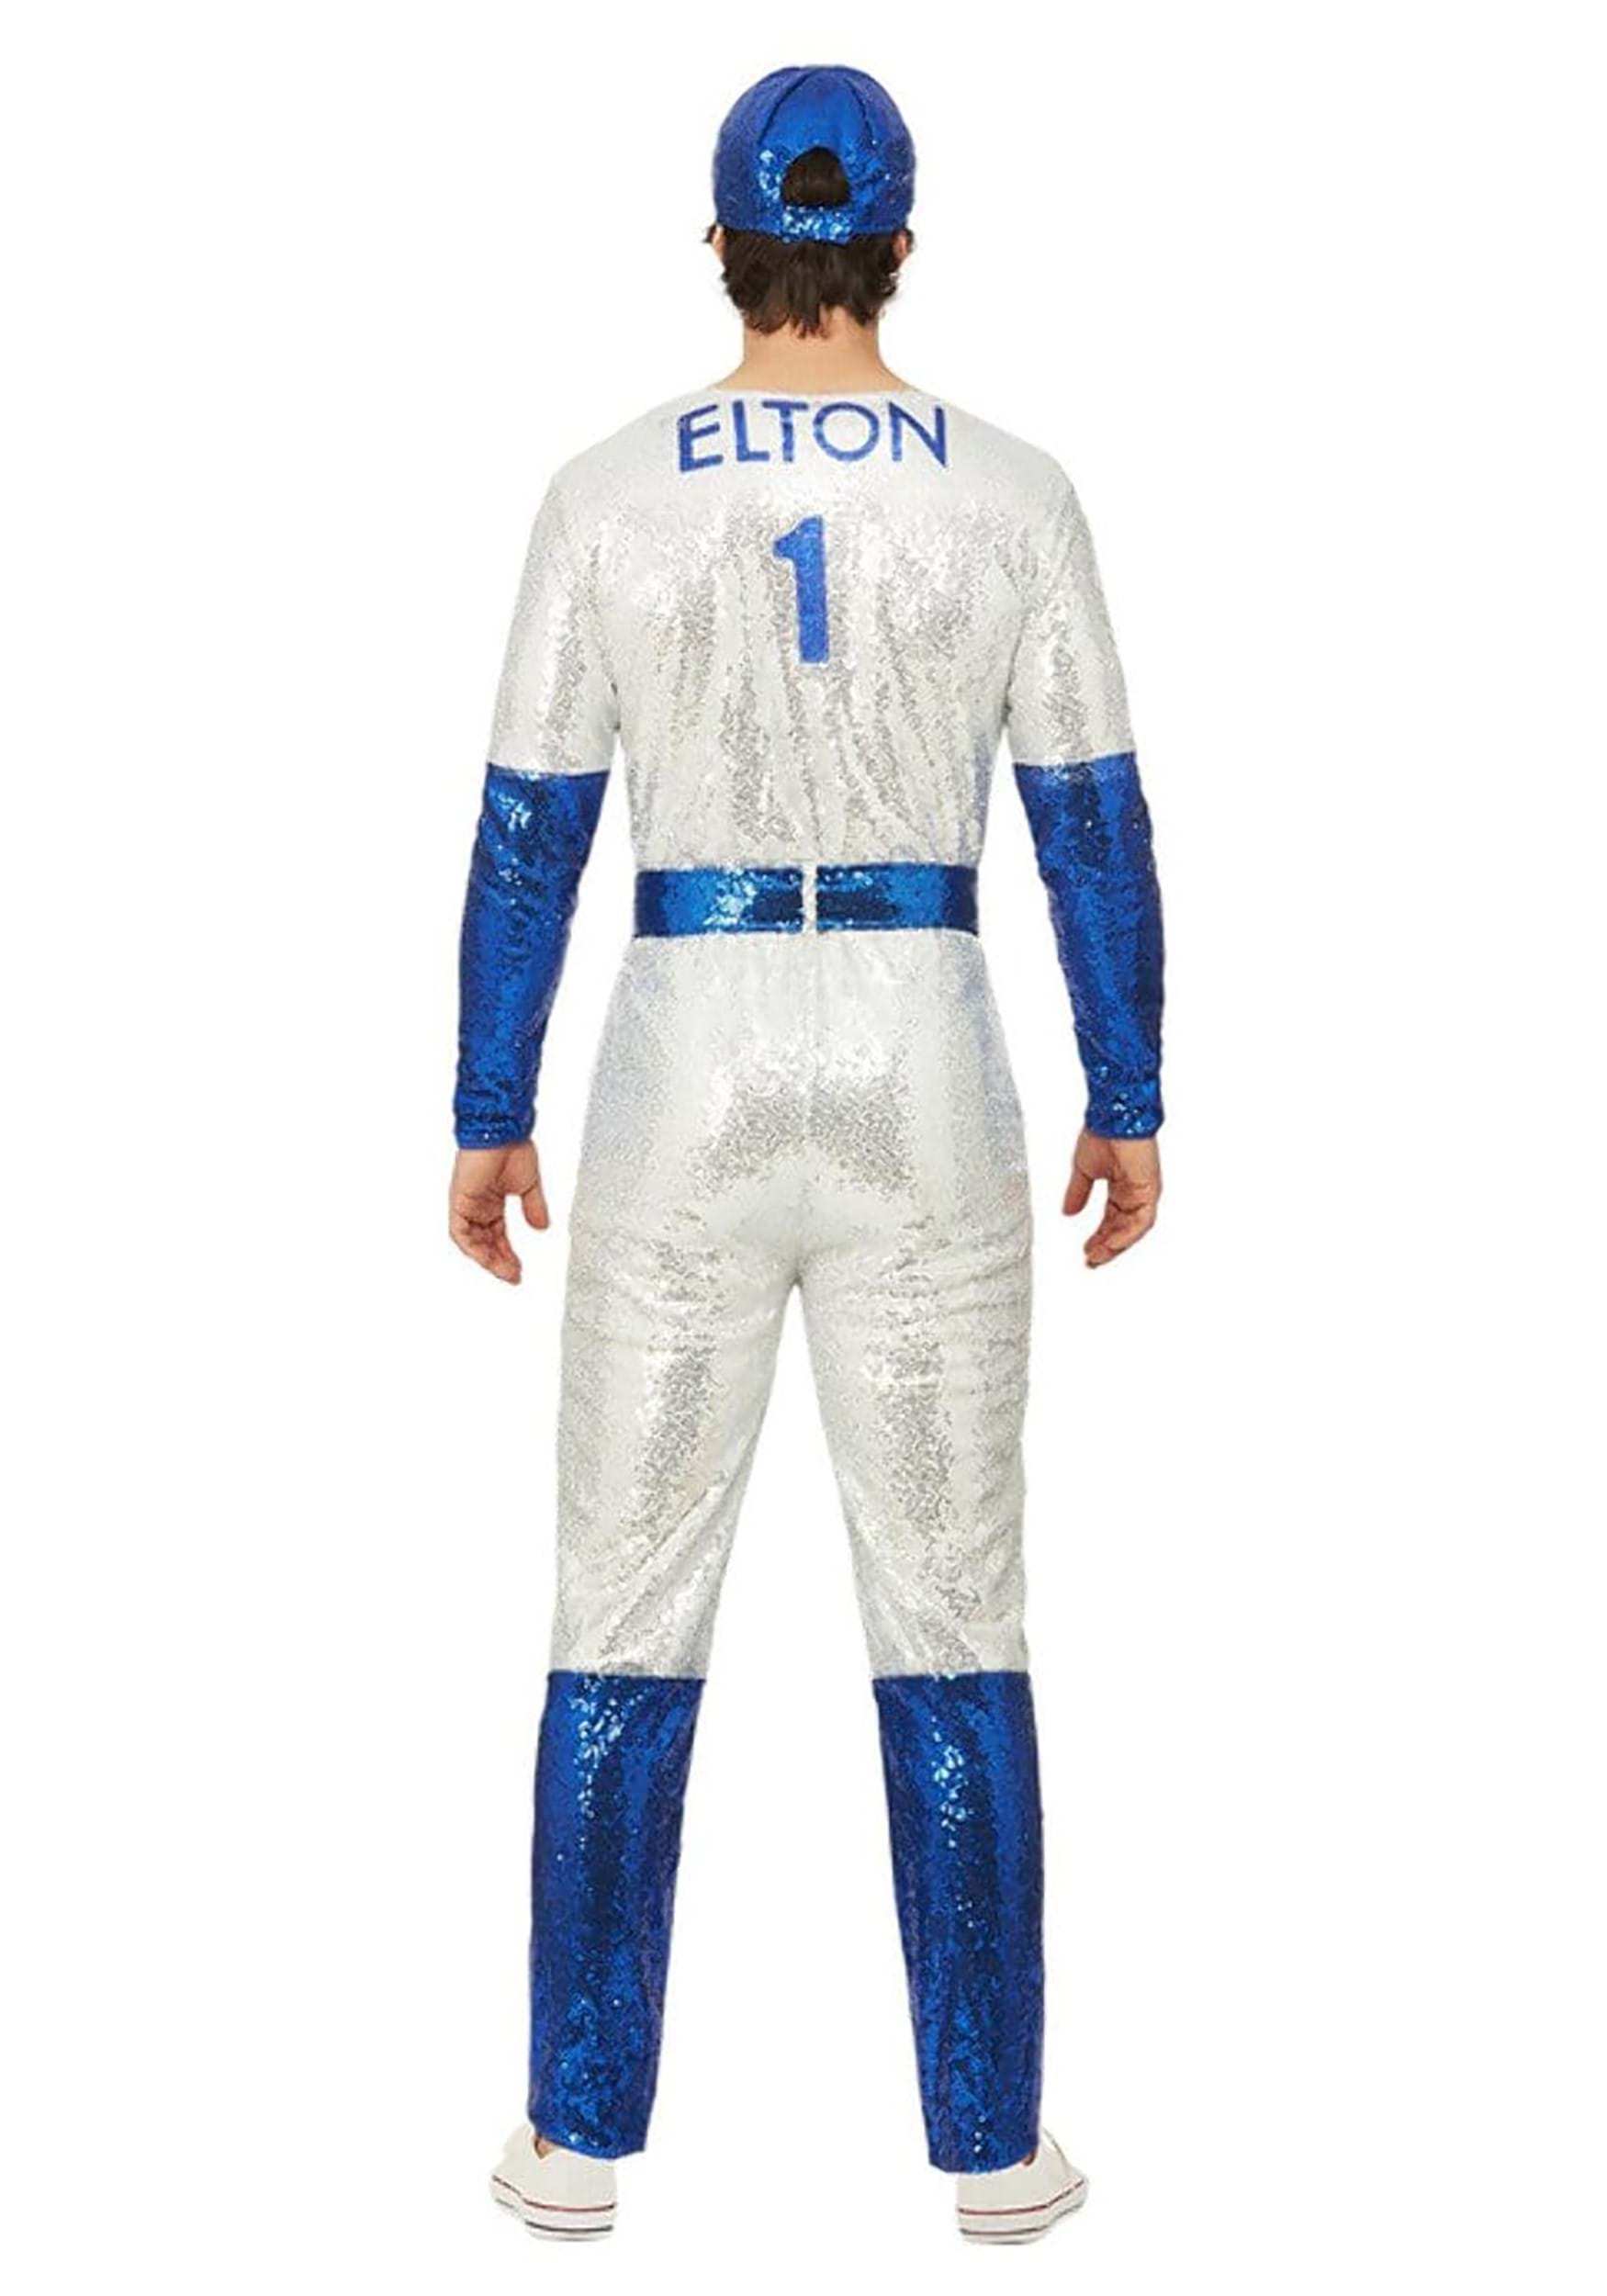 Men's Elton John Deluxe Sequin Baseball Fancy Dress Costume